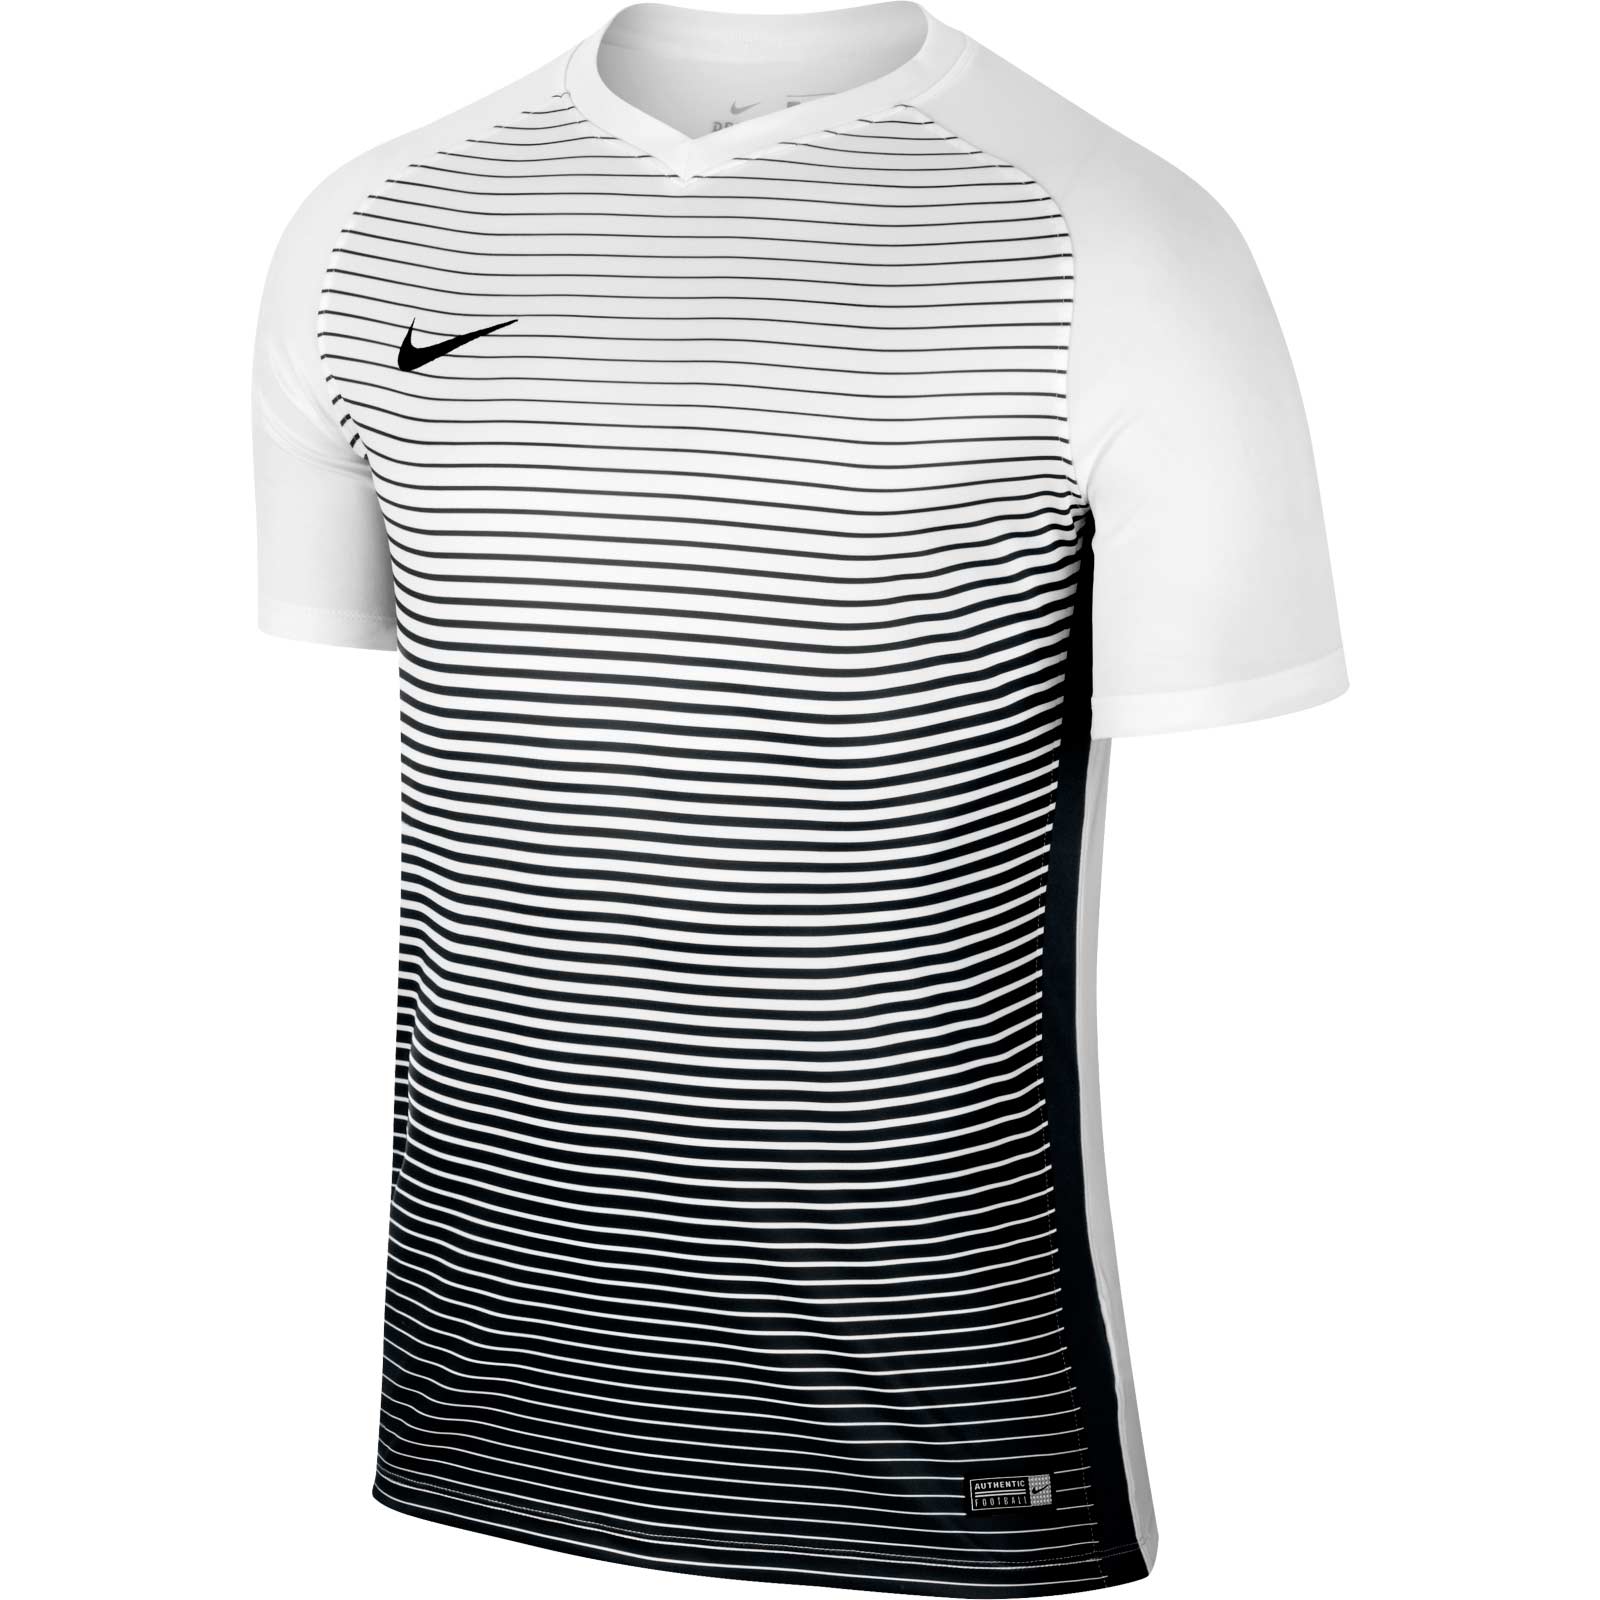 nike-precision-iv-2017-teamwear-jerseys-4.jpg